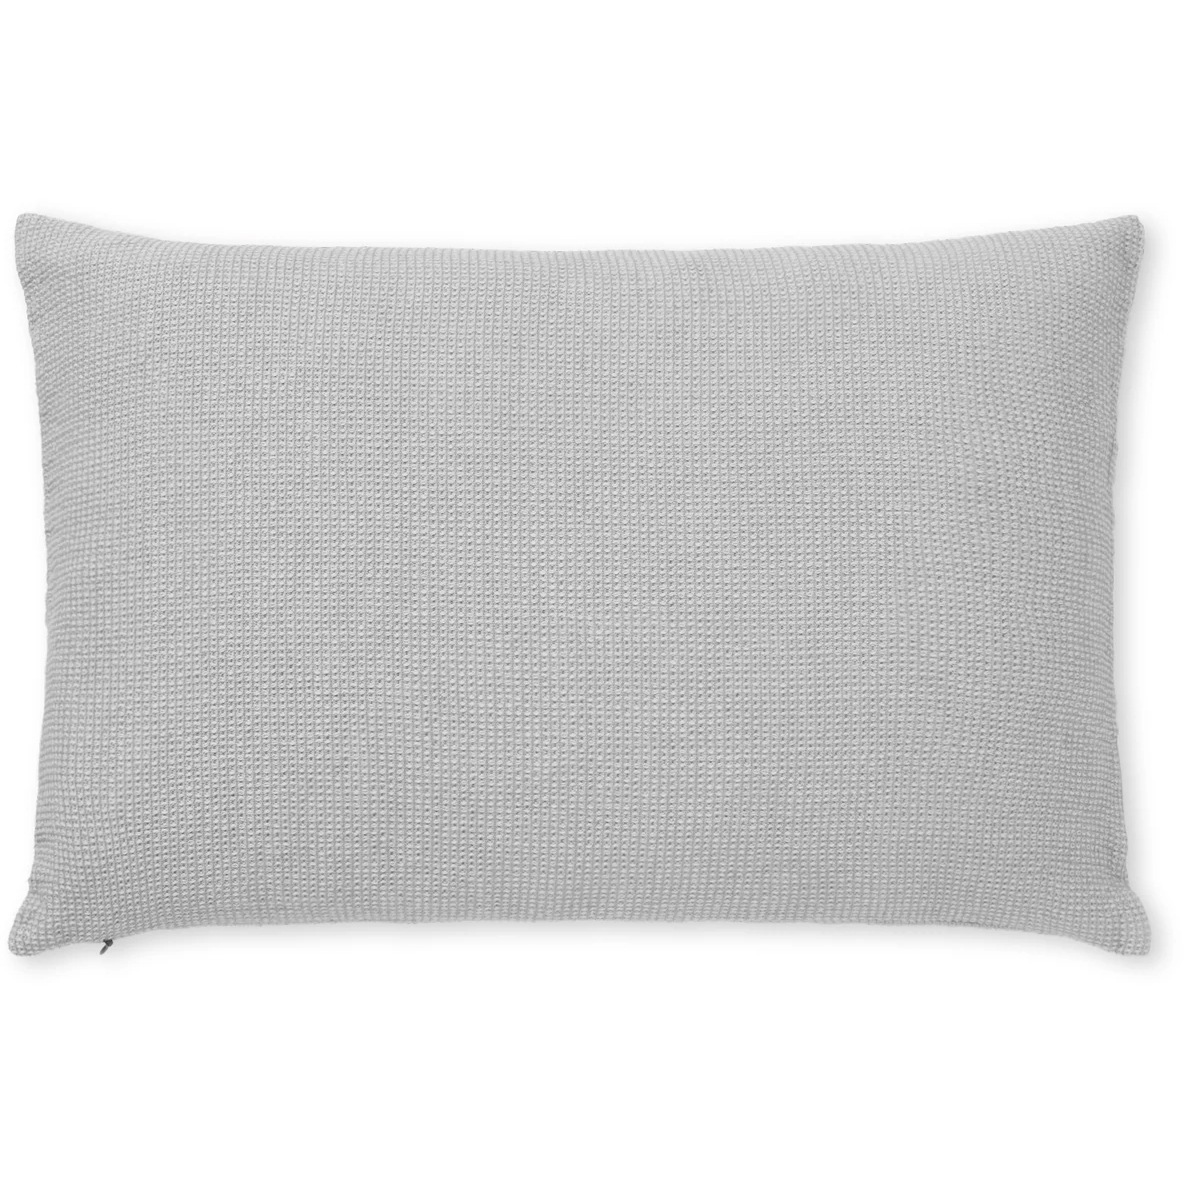 Daisy Cushion Cover 30x50 cm, Light Grey